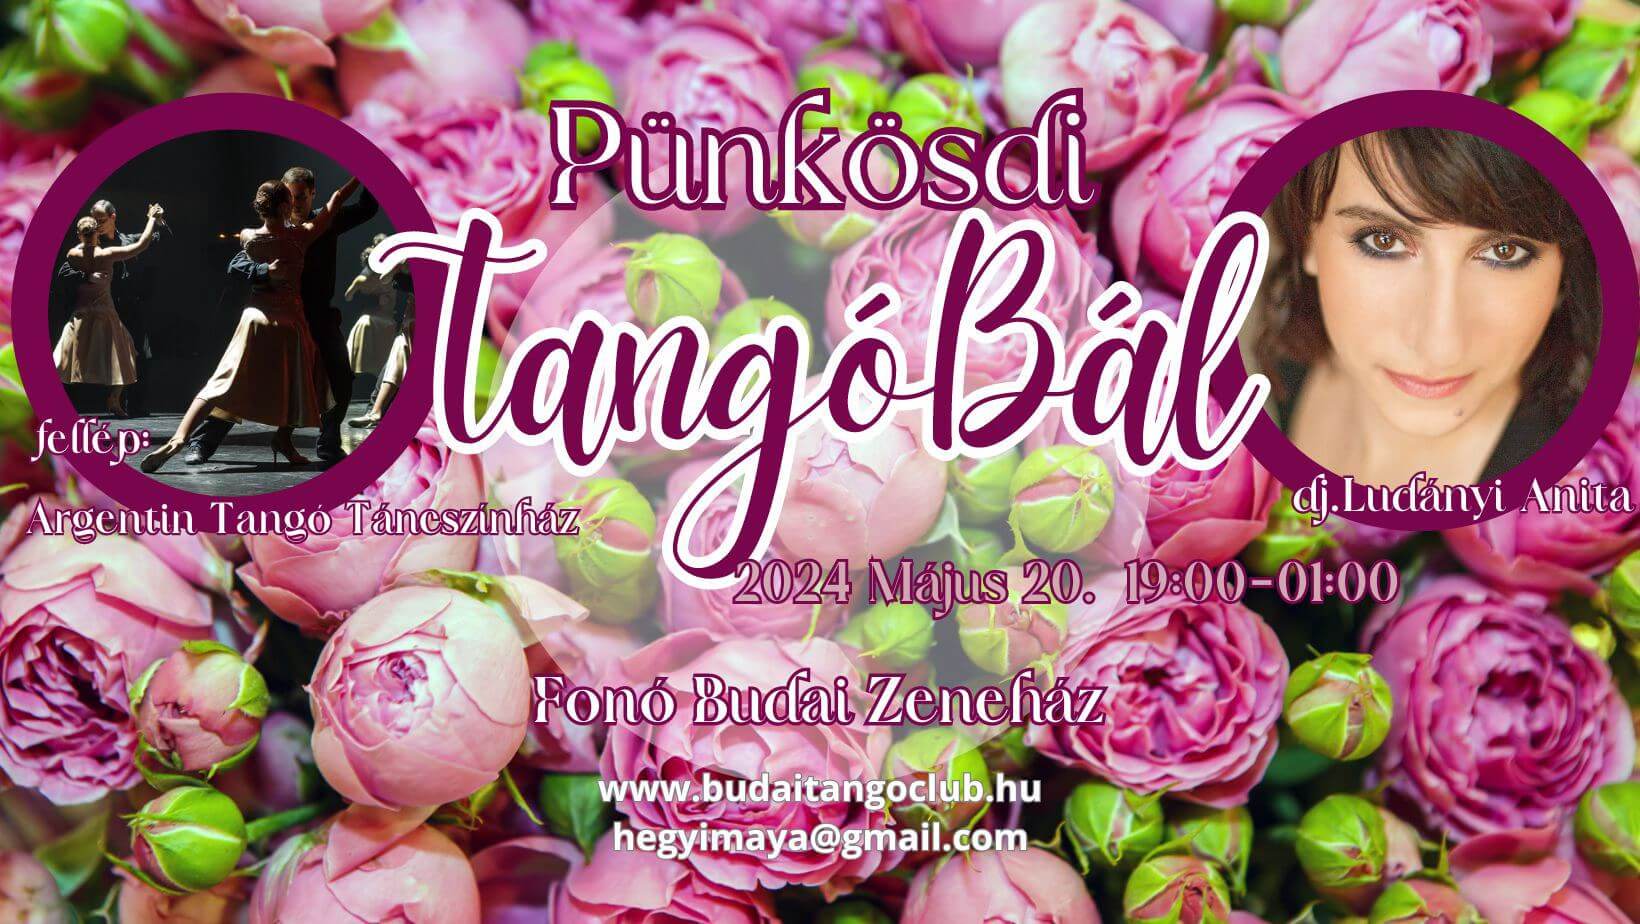 Pentecost Tango Ball, Fonó Budapest, 20 May